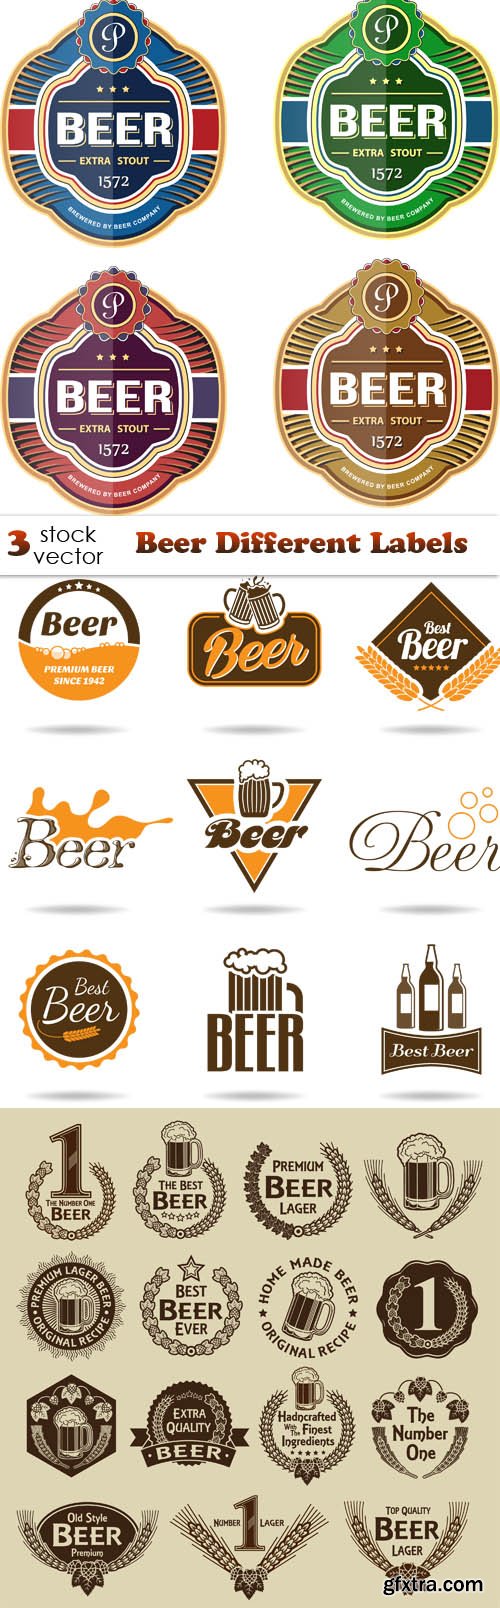 Vectors - Beer Different Labels